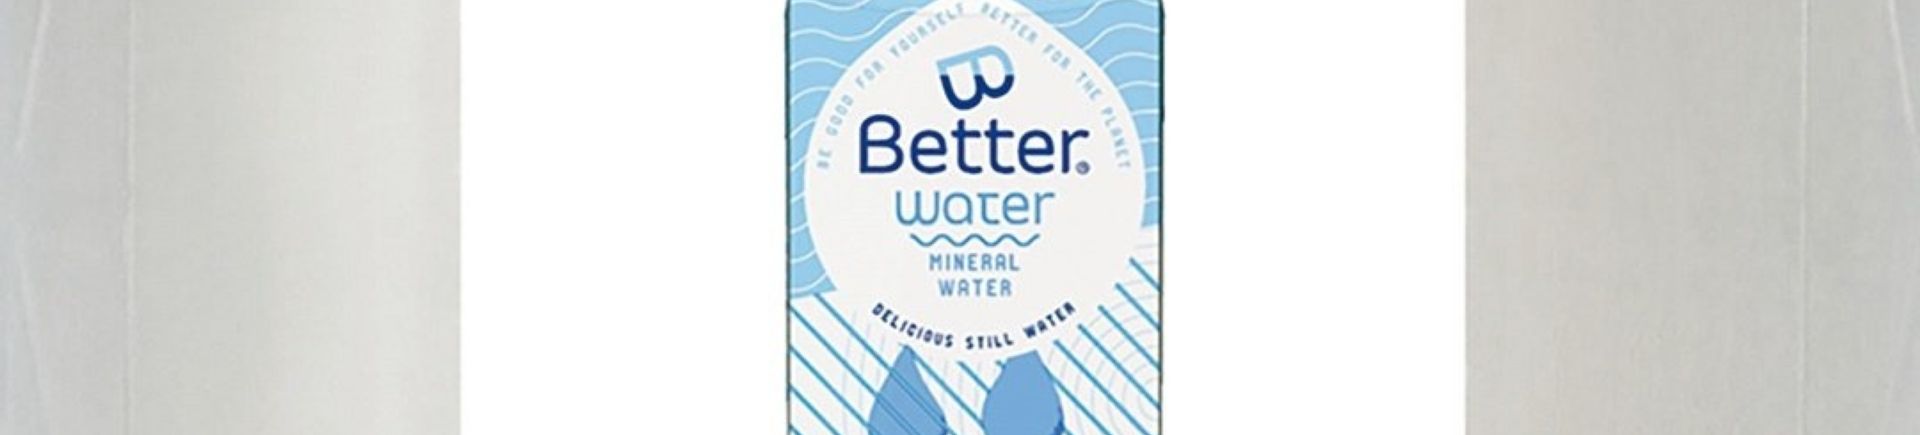 Better Water